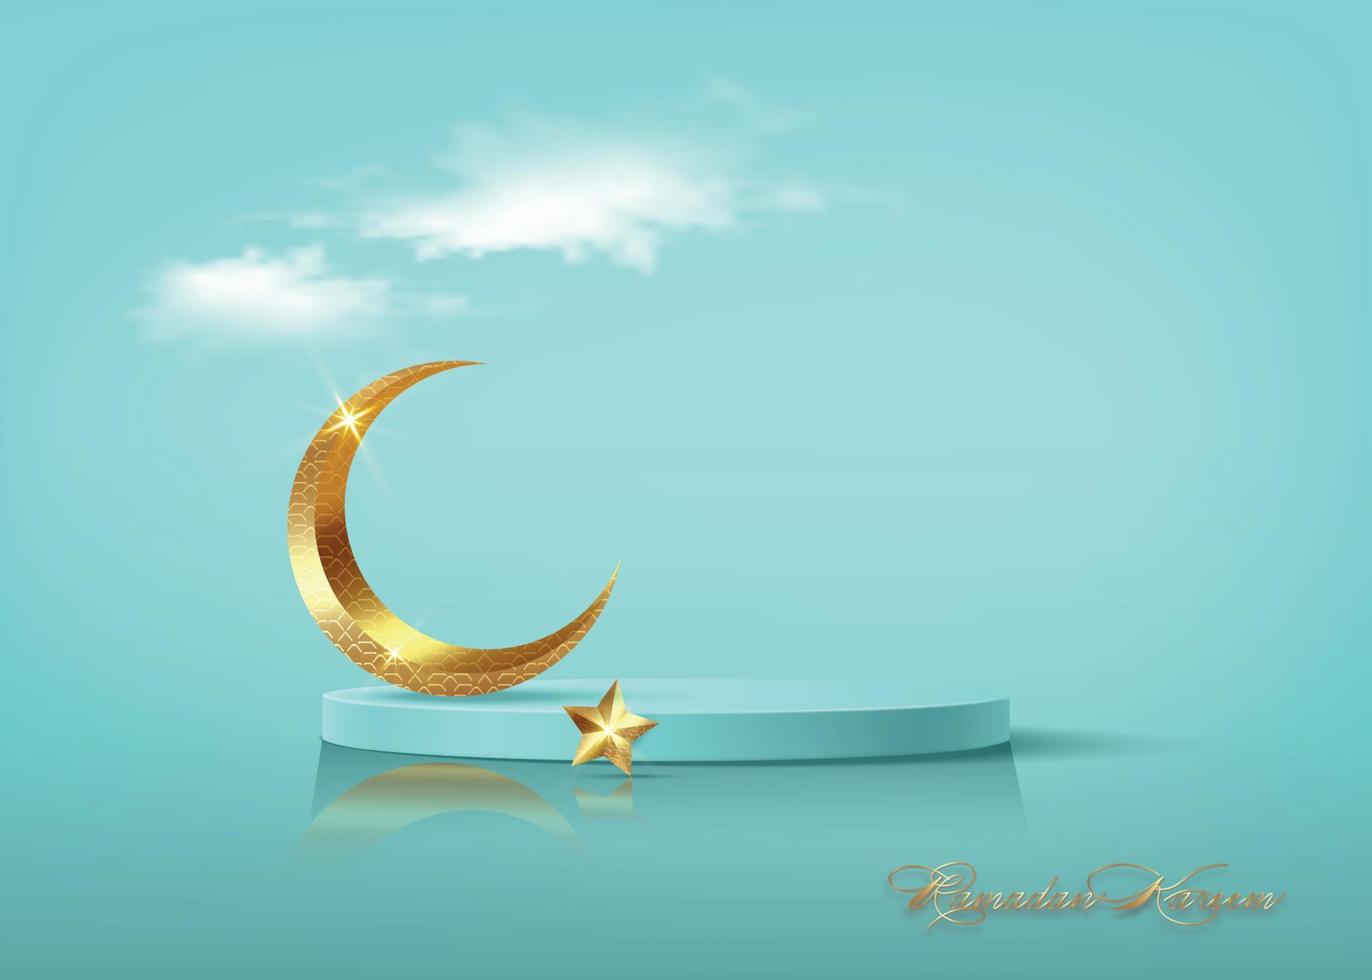 Ramadã kareem 3d vetor do clássico cerceta muçulmano islâmico festival tema produtos exibição fundo com ouro crescente lua, dourado estrela, islâmico árabe decorações. pódio estúdio, religioso símbolos